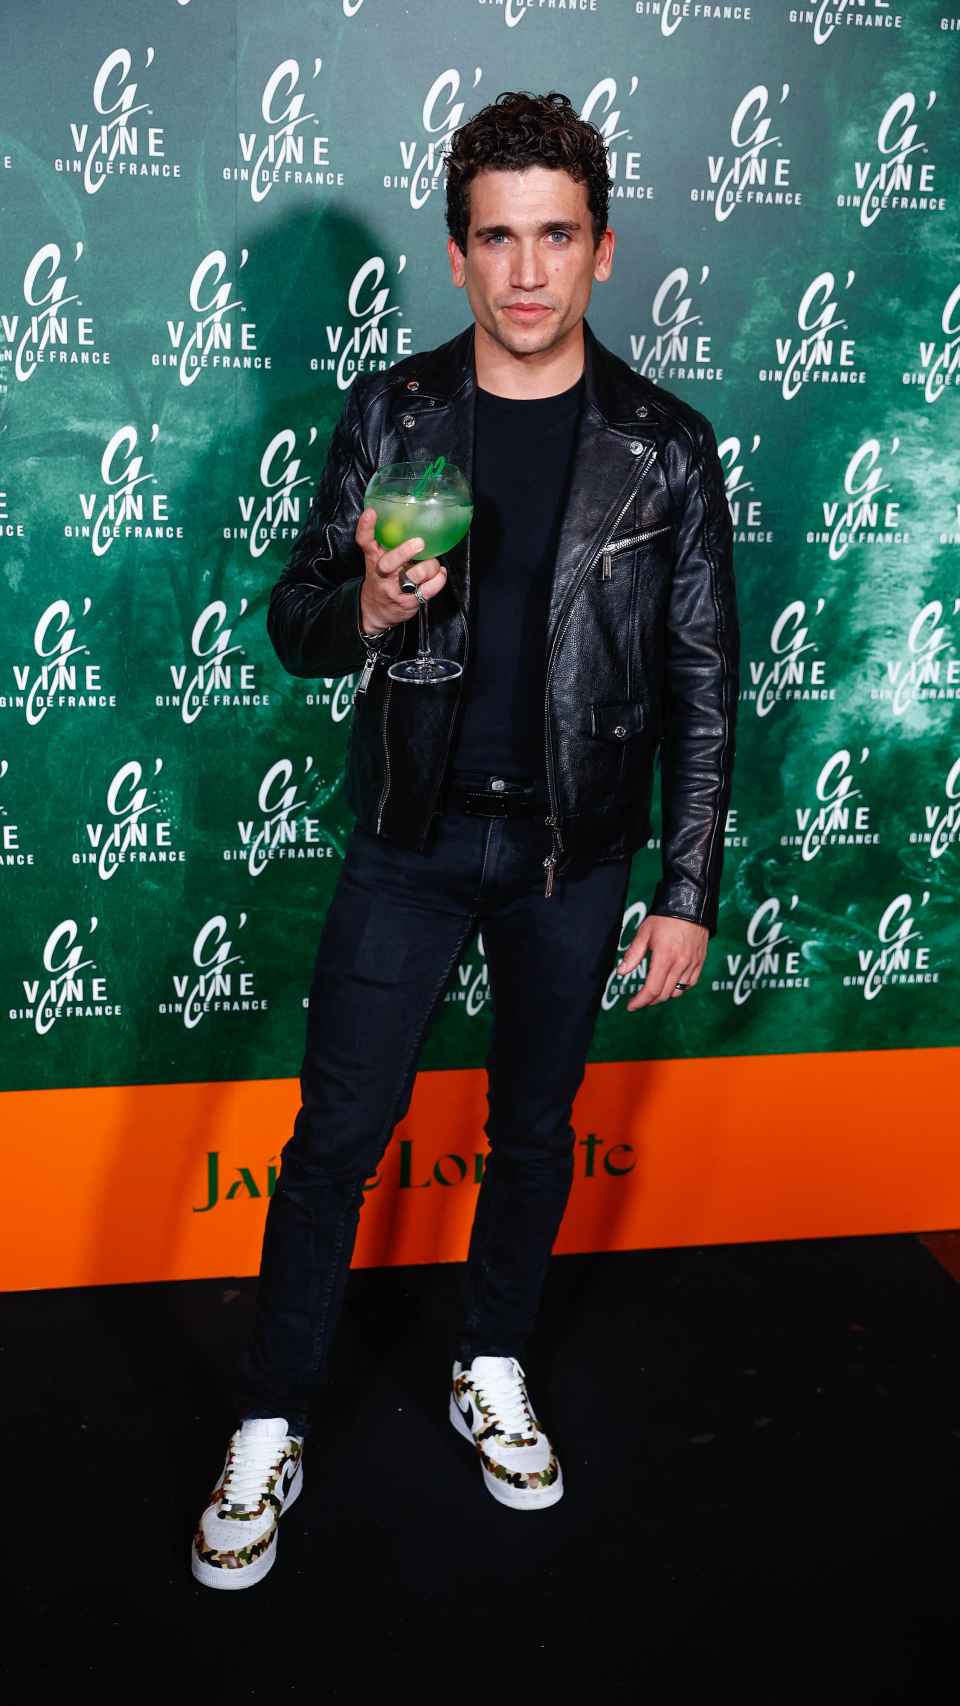 Jaime Lorente posando en el 'photocall' este pasado miércoles 4 de mayo, en Madrid.